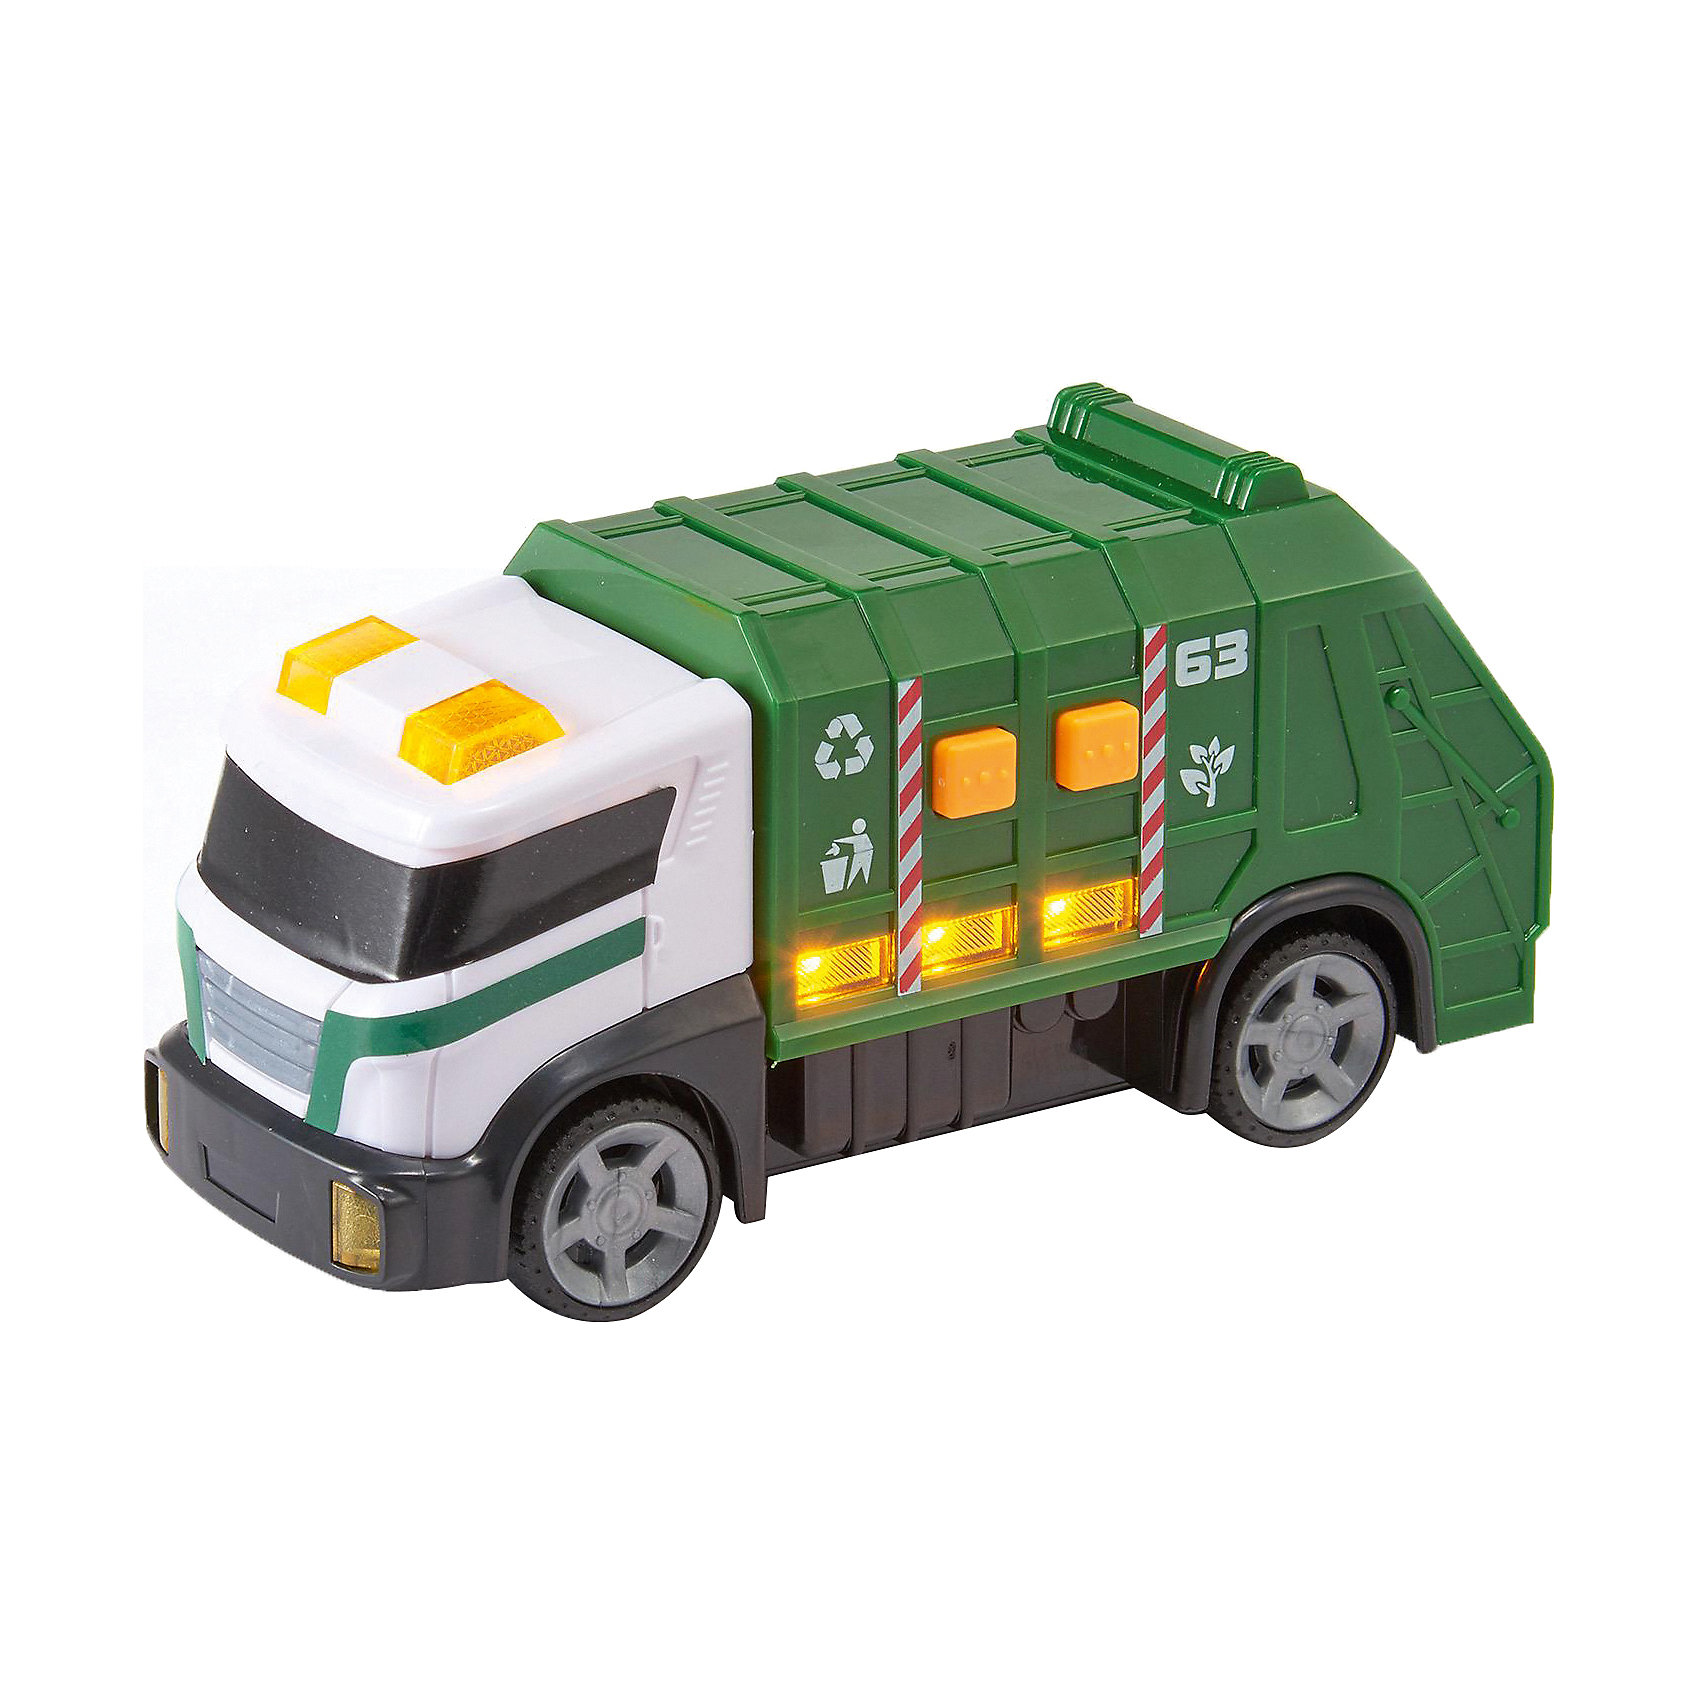 Teamsterz машинки мусоровоз. Машинки HTI мини мусоровоз. Машинка "мусоровоз", 15 см. Мусоровоз зеленый игрушка.